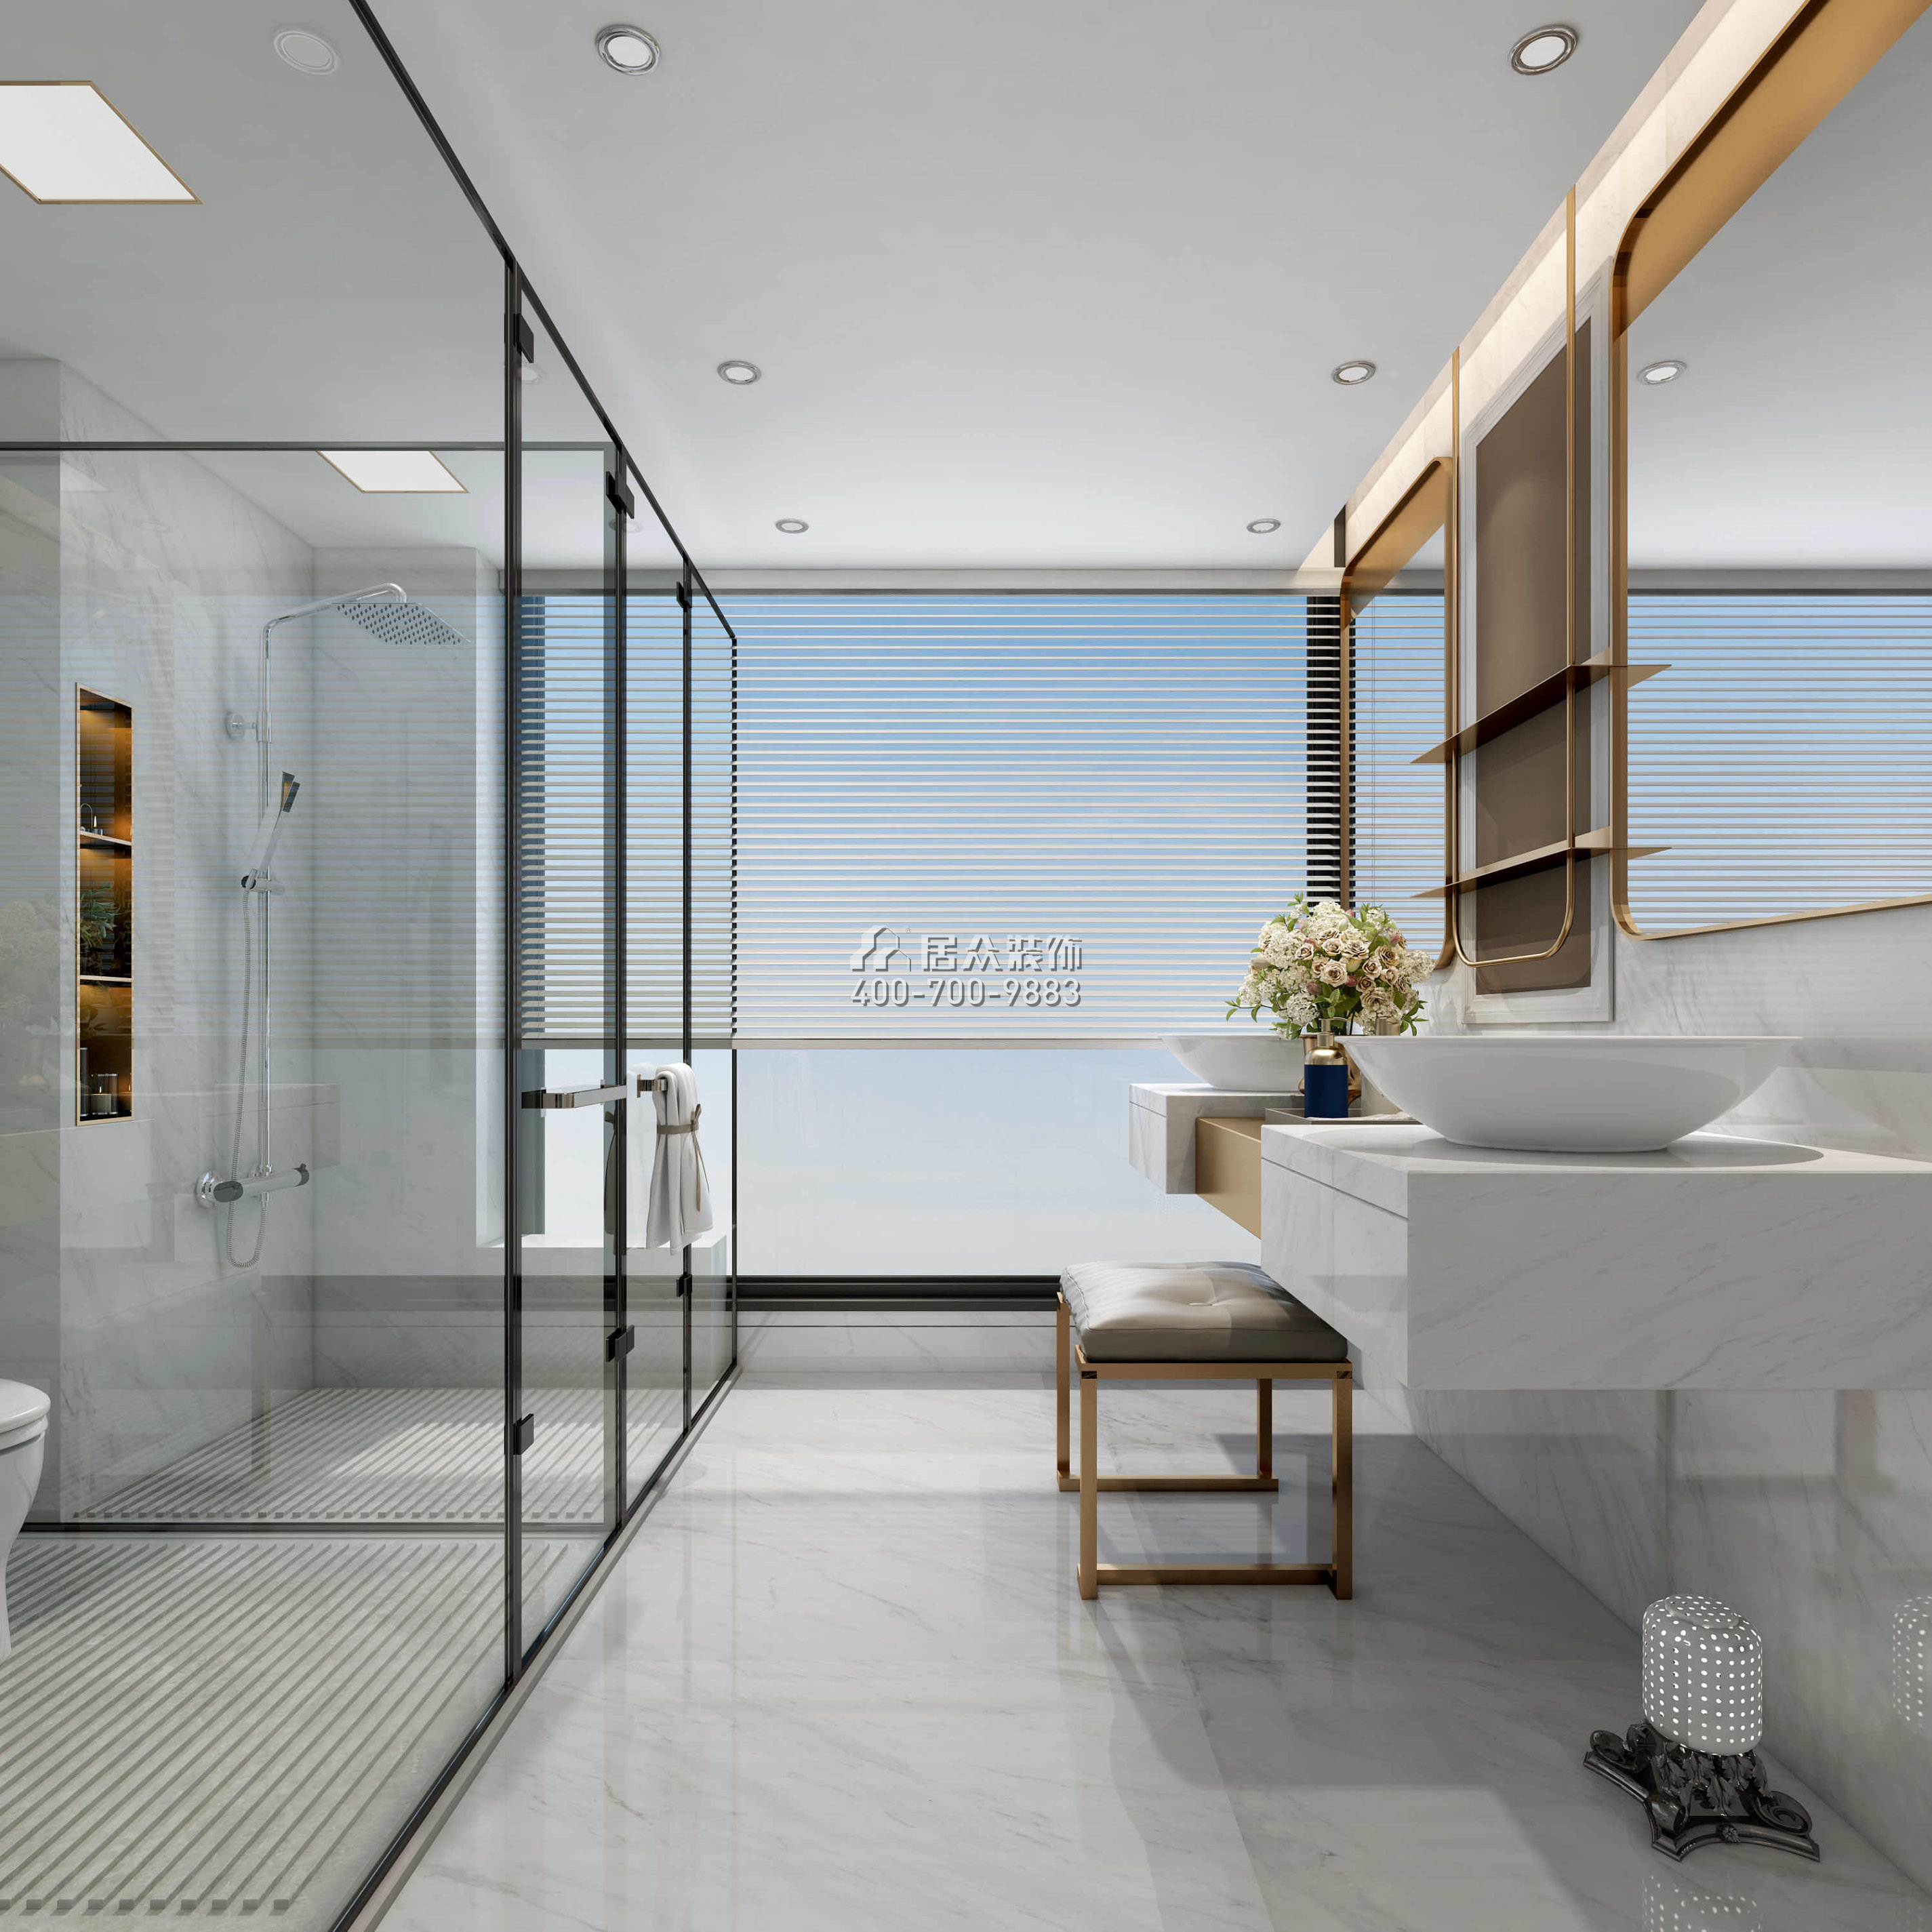 天鹅堡370平方米现代简约风格平层户型卫生间装修效果图